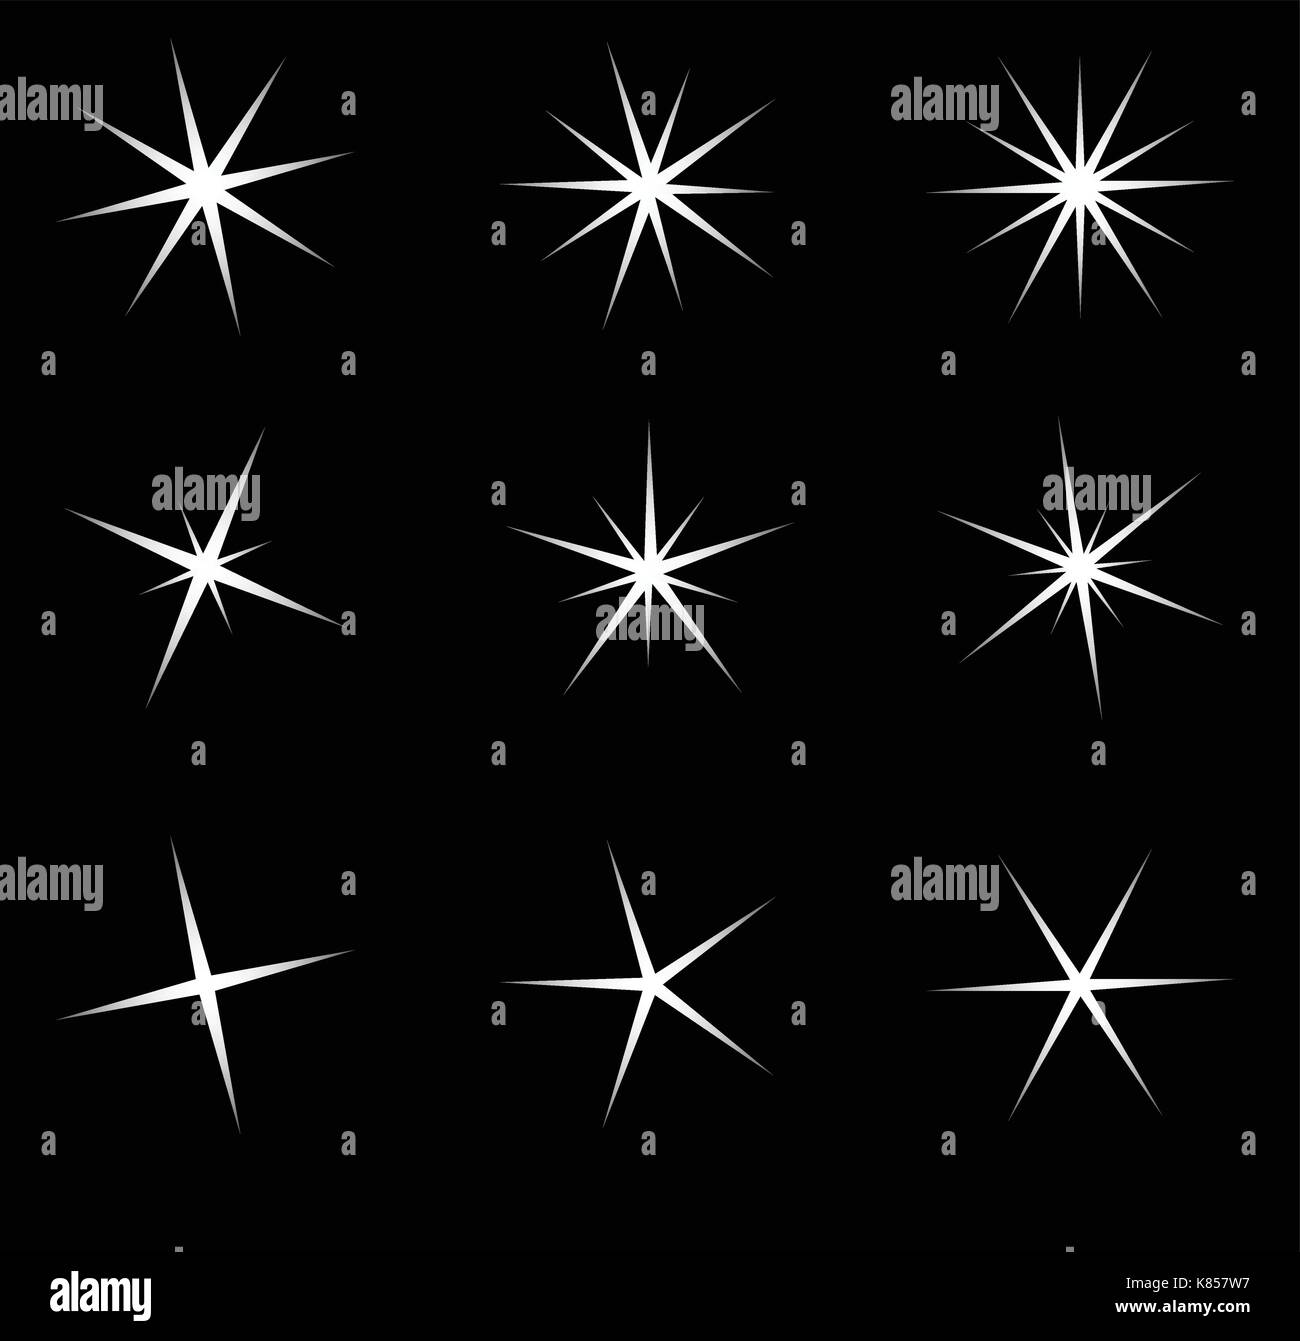 Transparente Sterne Vektor symbol Icon Design. Schöne Abbildung: Leuchtende Lichteffekt Sterne Bursts mit funkelt auf transparentem Hintergrund für Ch Stock Vektor